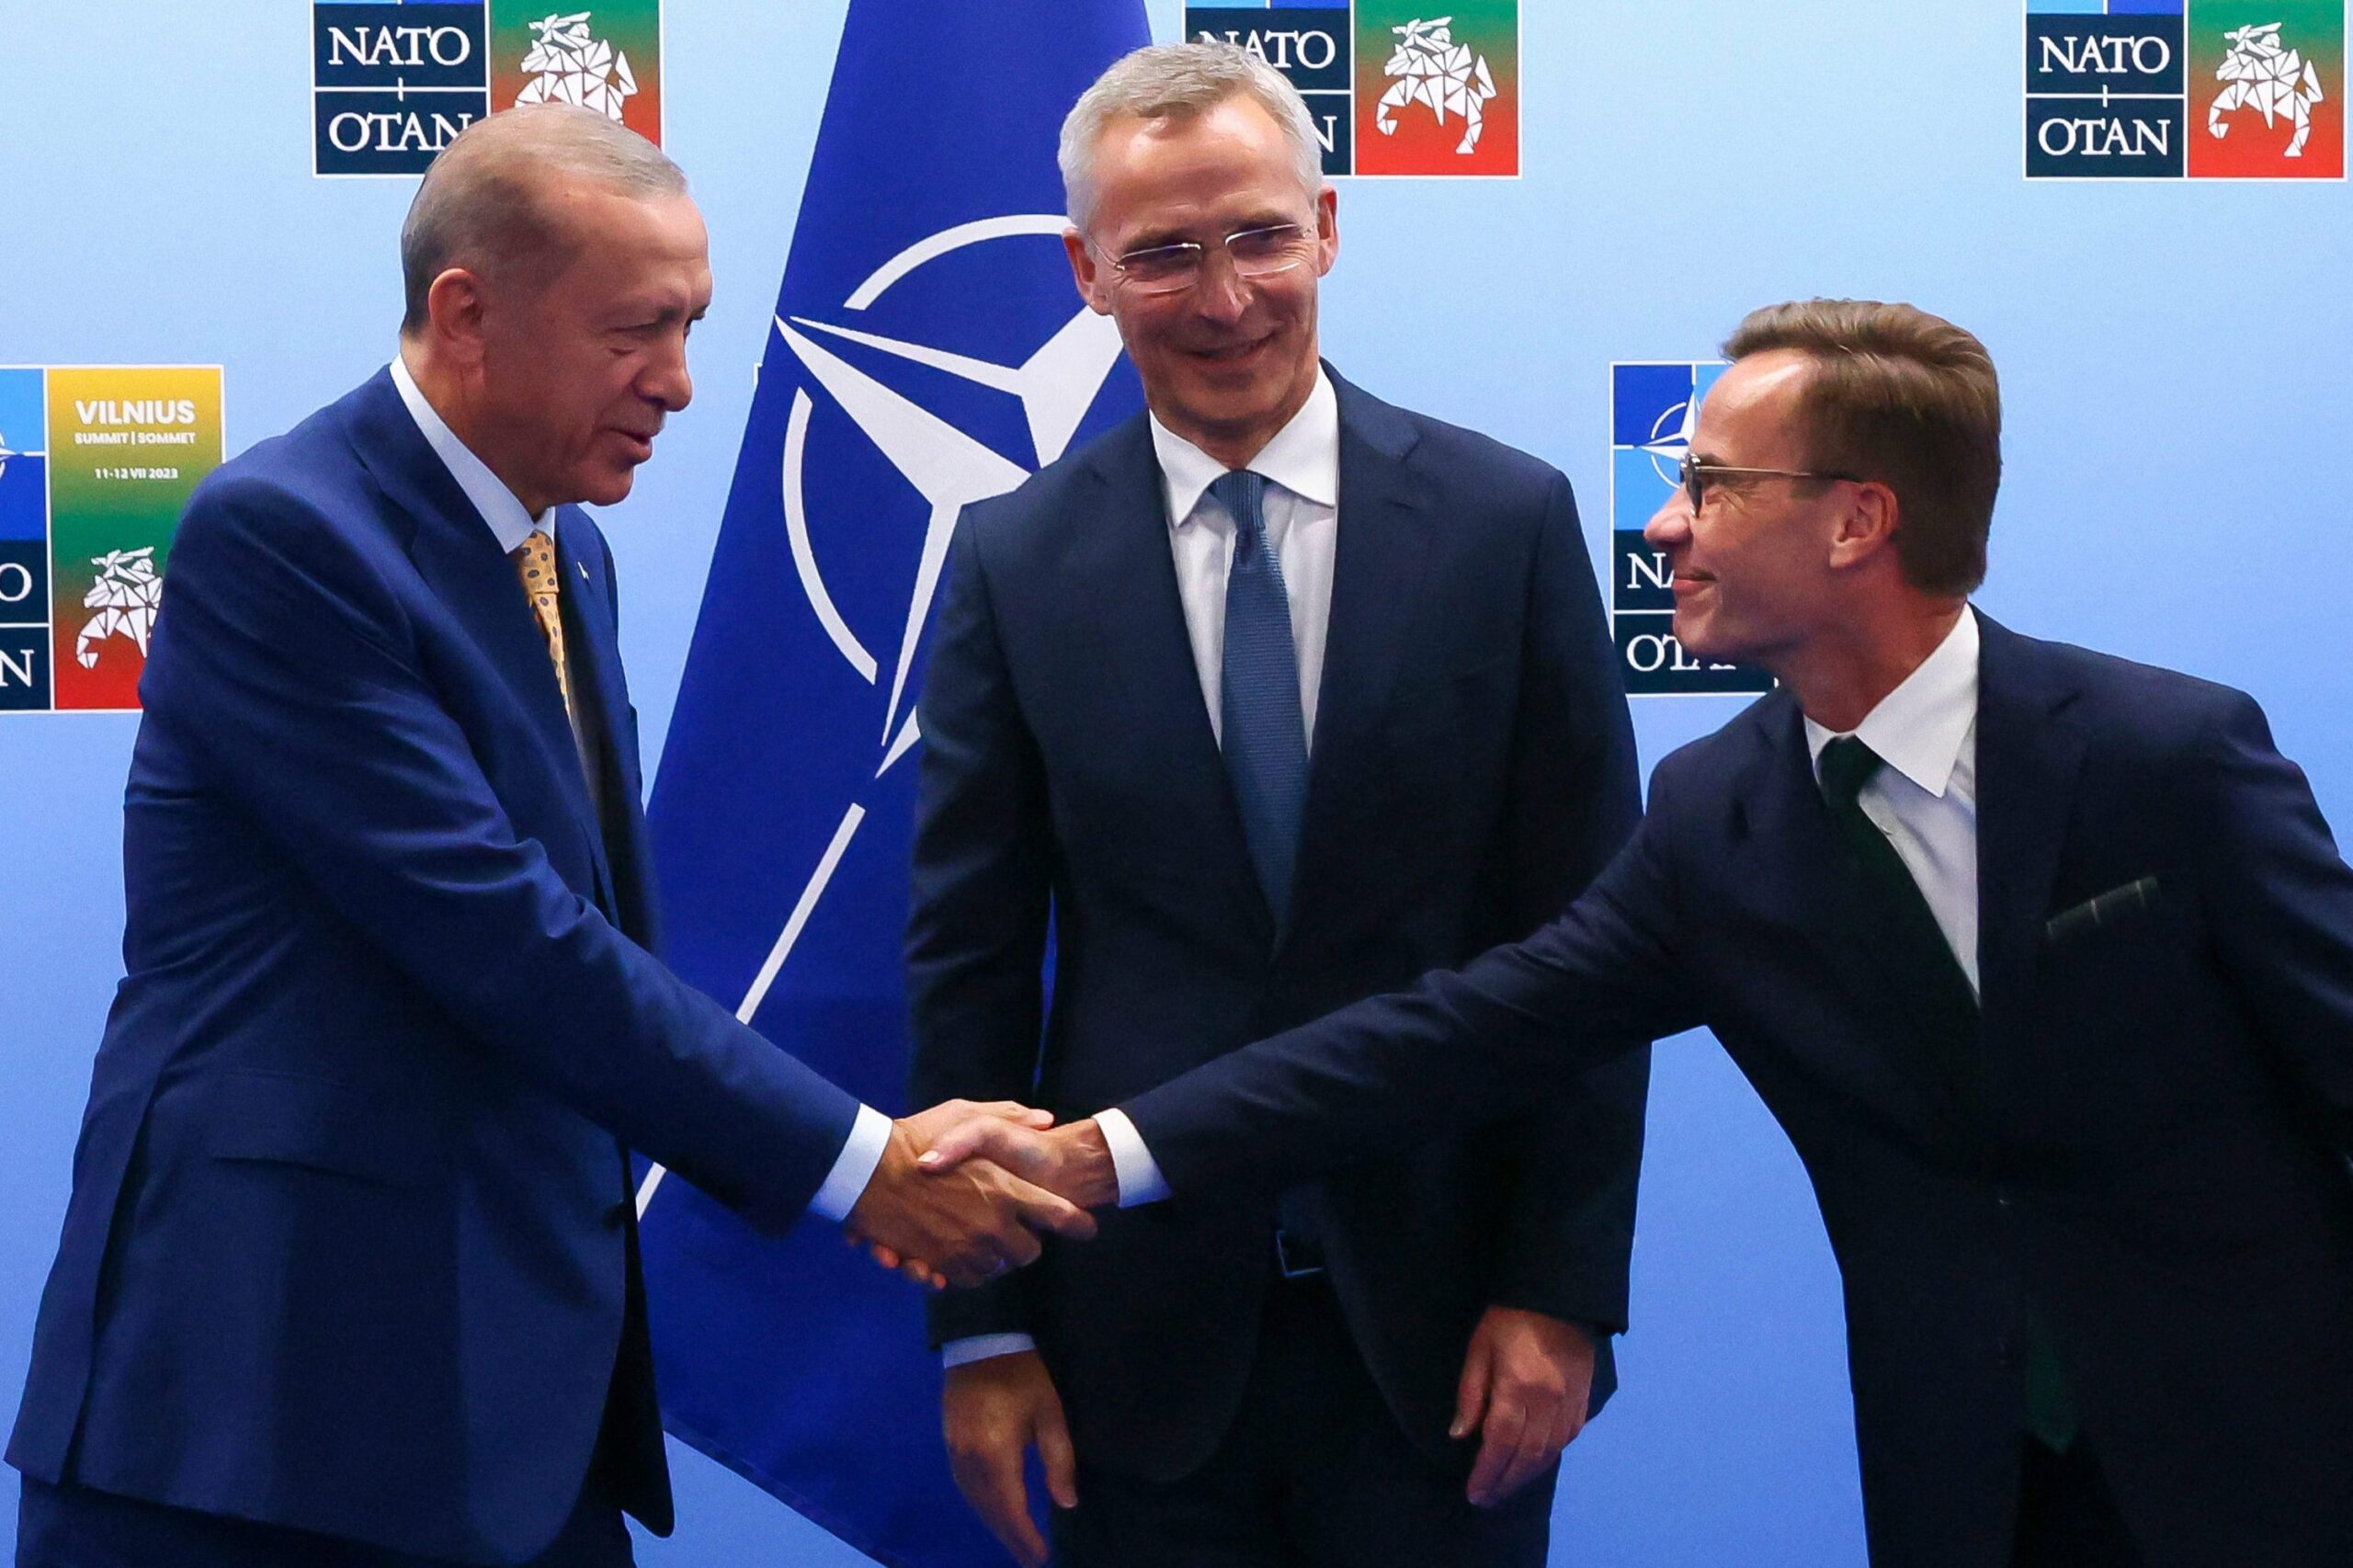 NATO Summit shows Erdogan’s turn to the West